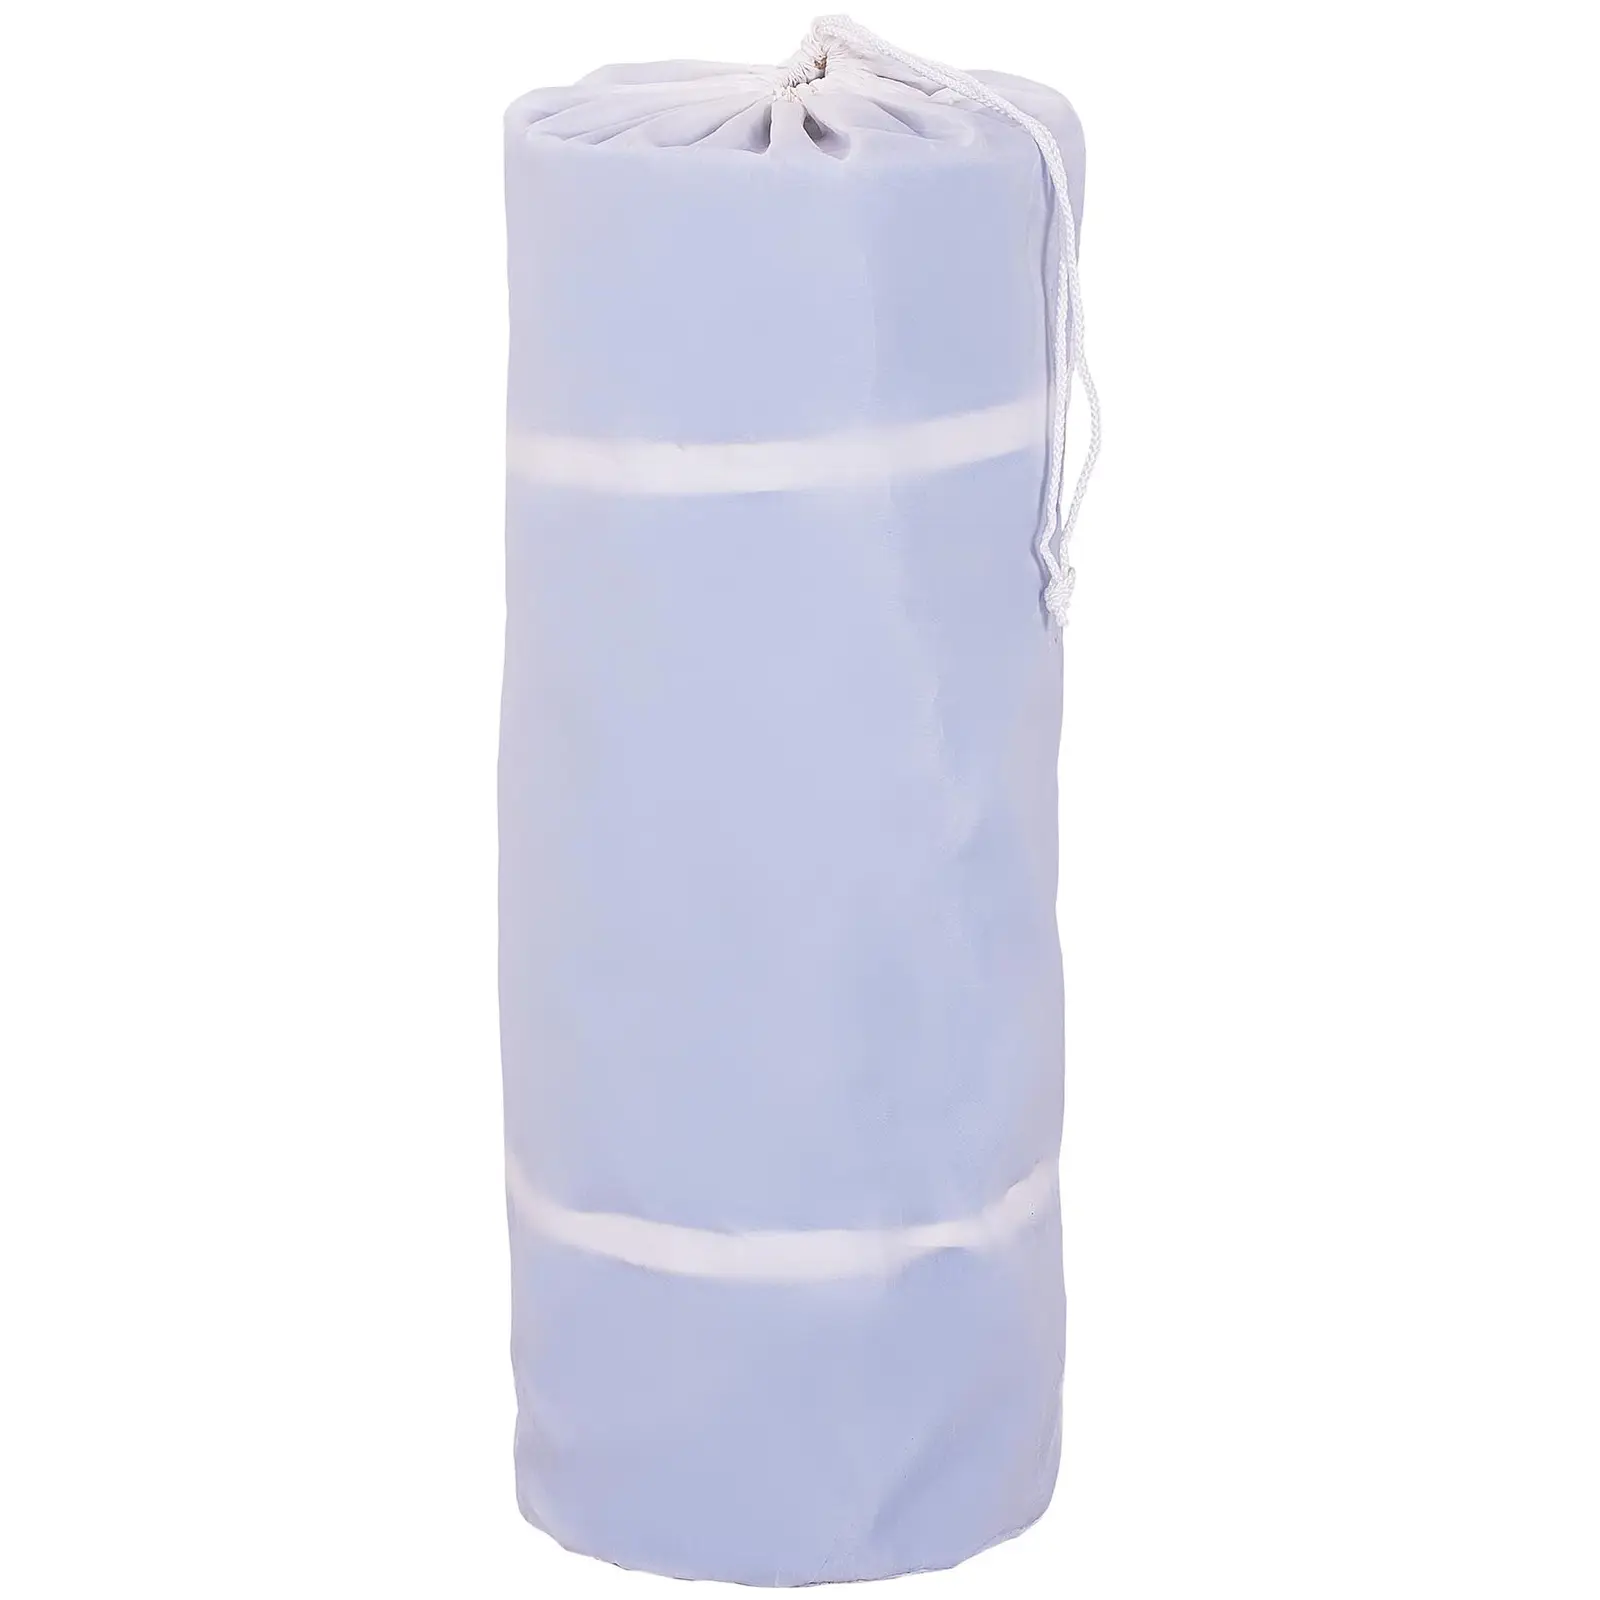 Tapete de ginástica inflável - 600 x 200 x 20 cm - azul-branco